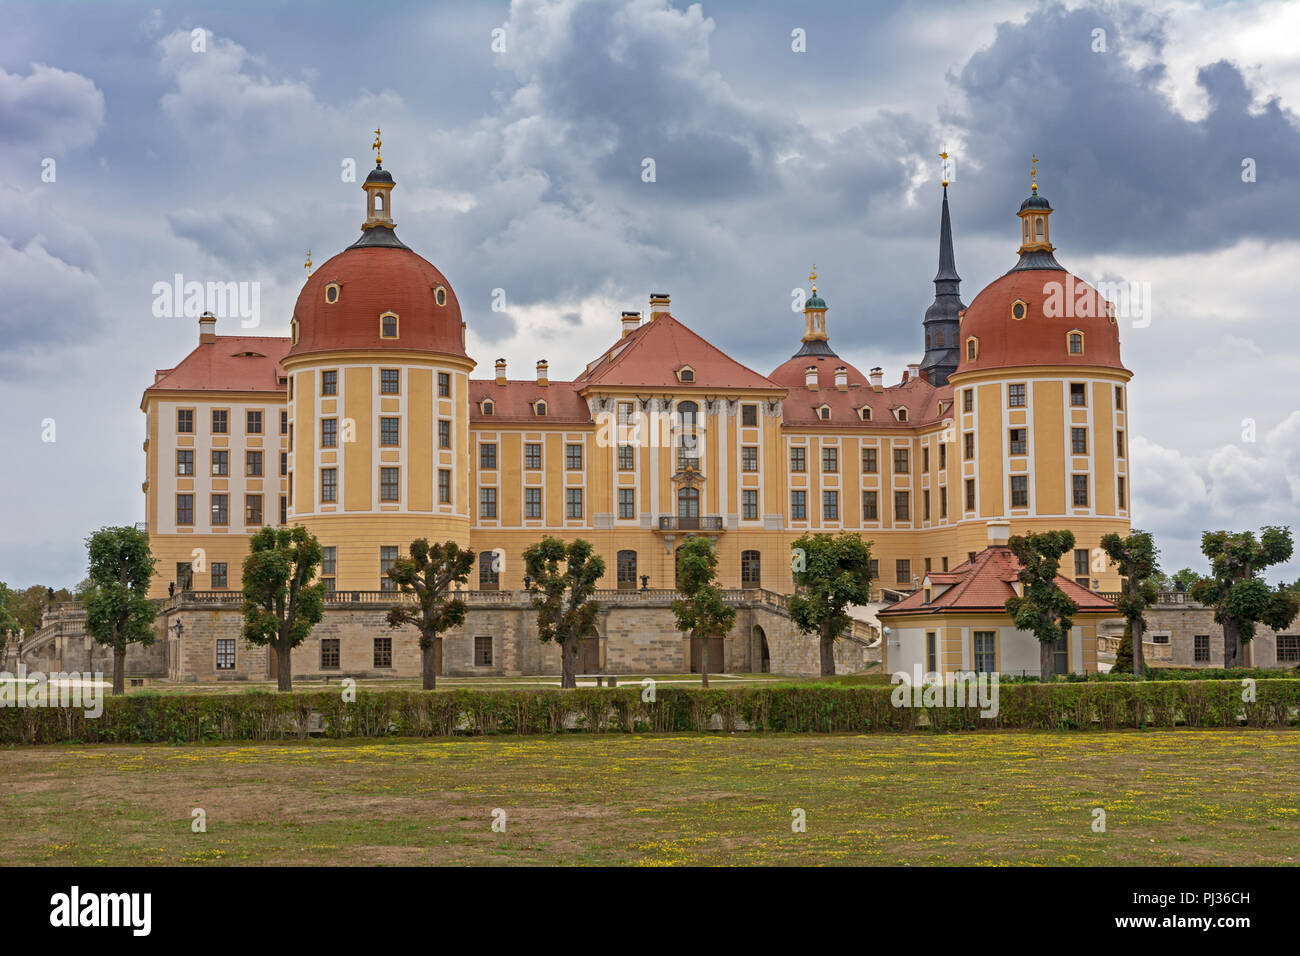 MORITZBURG, Germania - 21 agosto: castello di Moritzburg di Moritzburg, Germnay il 21 agosto 2018. Il castello barocco fu costruito nel XVI secolo dal Duca Foto Stock